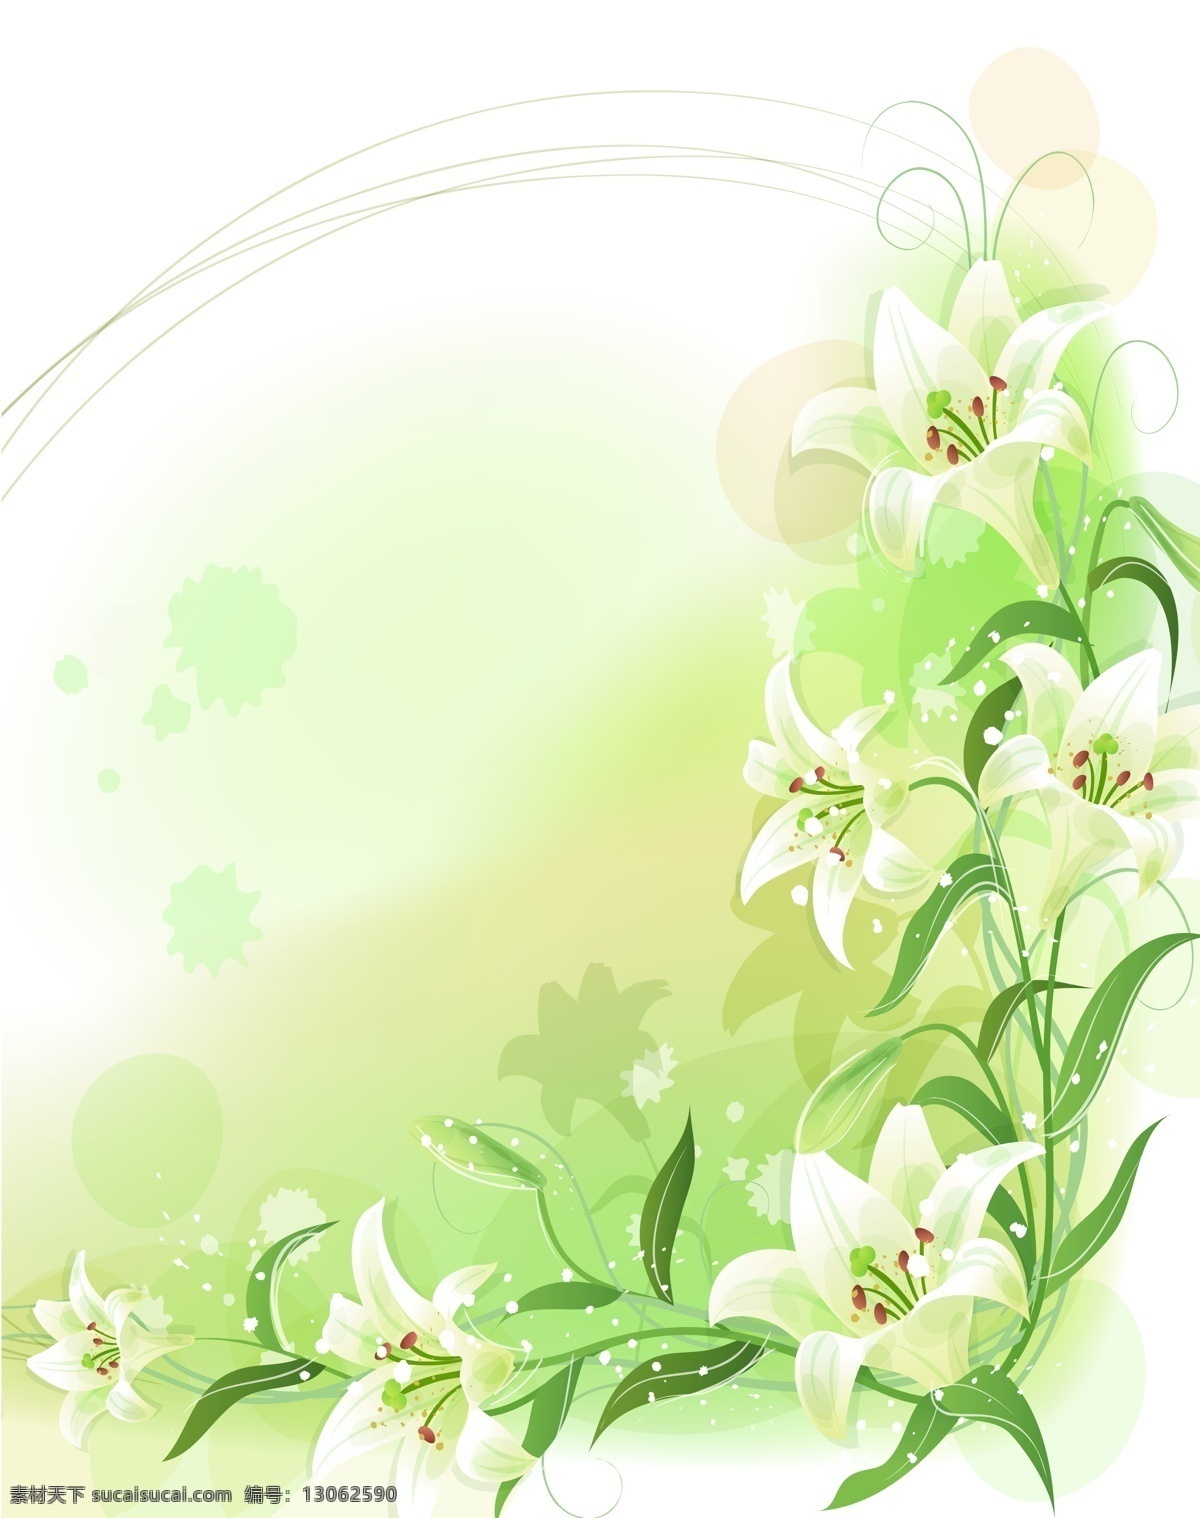 s 表白 玻璃移门图案 自然风景 花朵 环境设计 其他设计 设计图库 环纹 花边 花边花纹 底纹边框